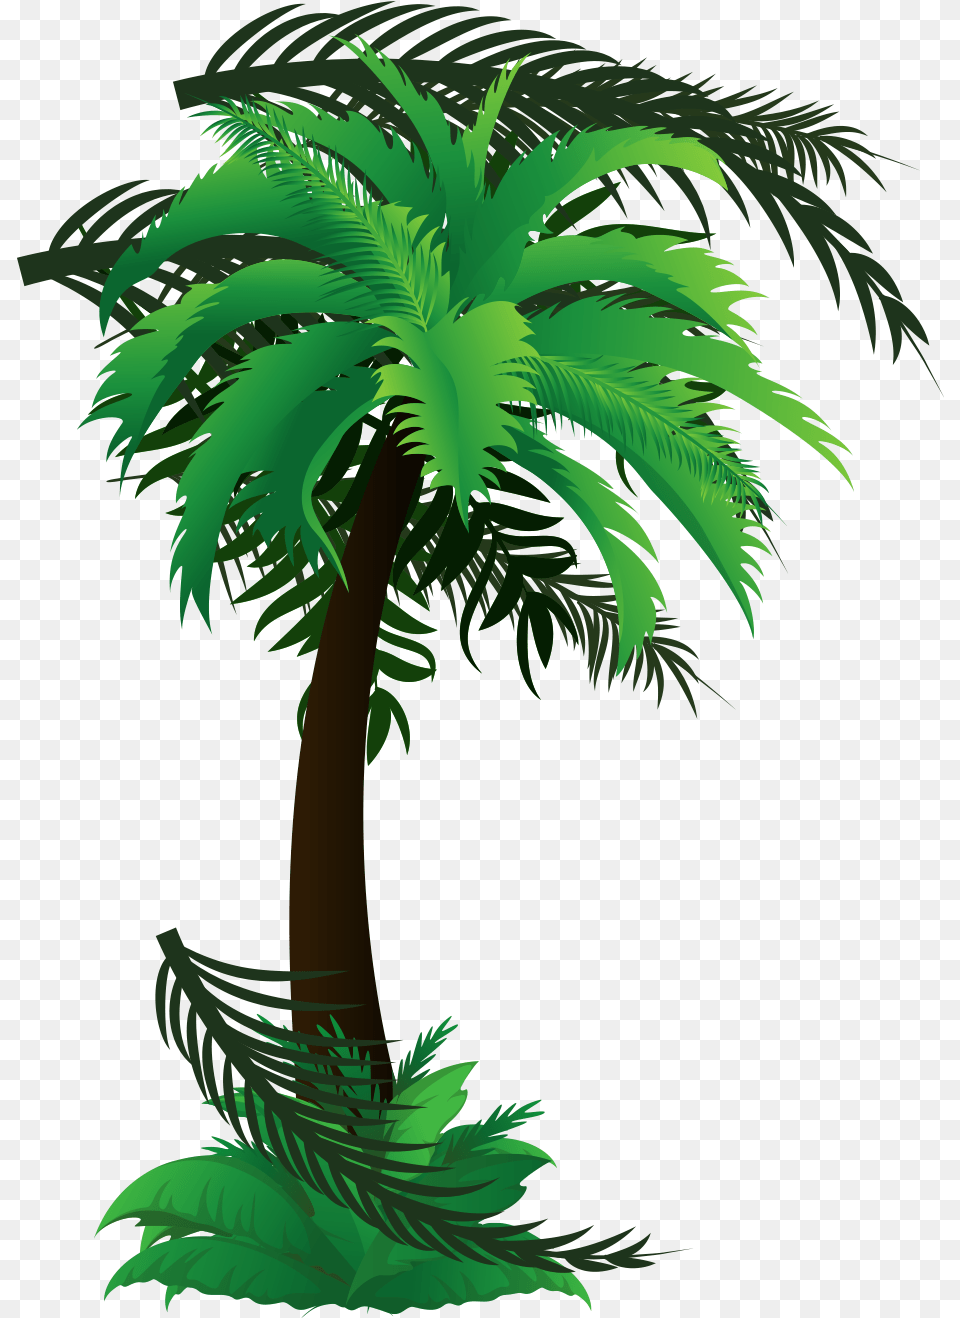 Palm Tree Emoji Fresh, Palm Tree, Plant, Vegetation, Green Png Image